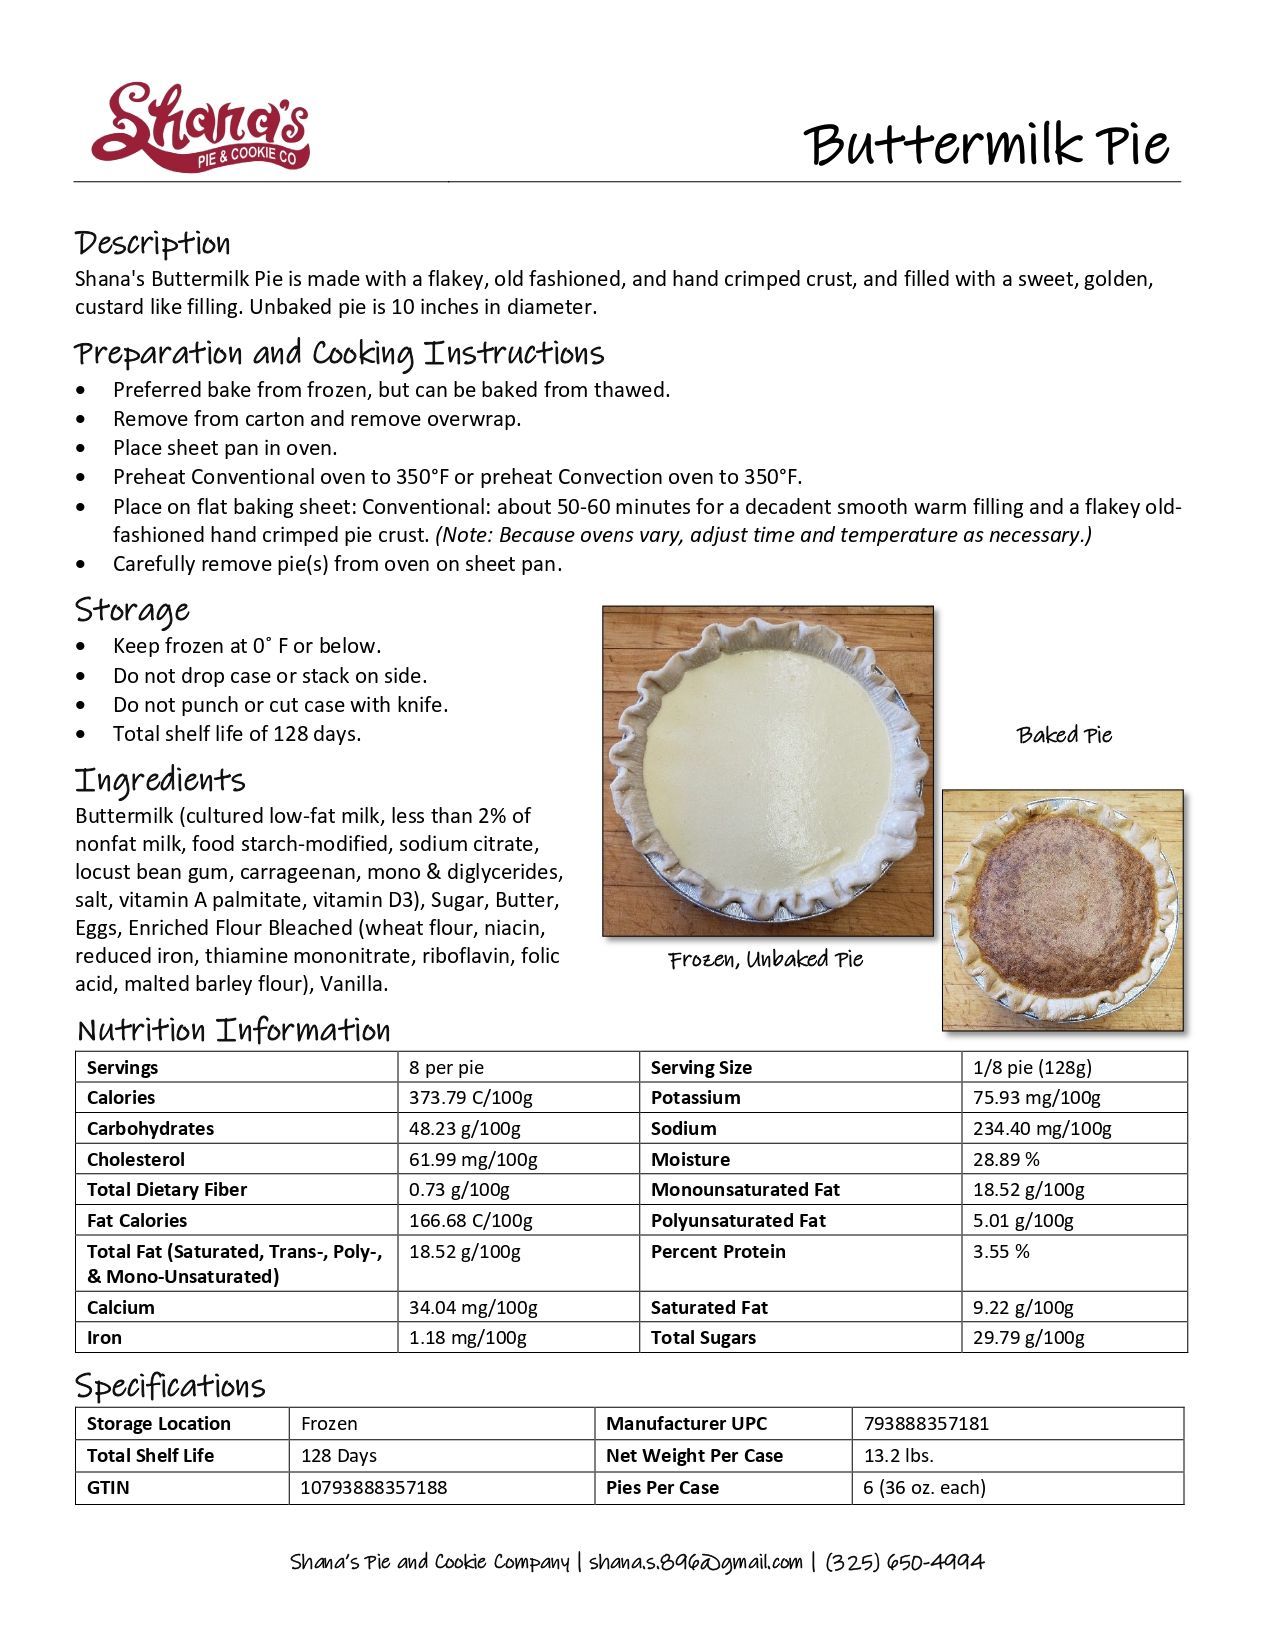 Buttermilk Pie Description